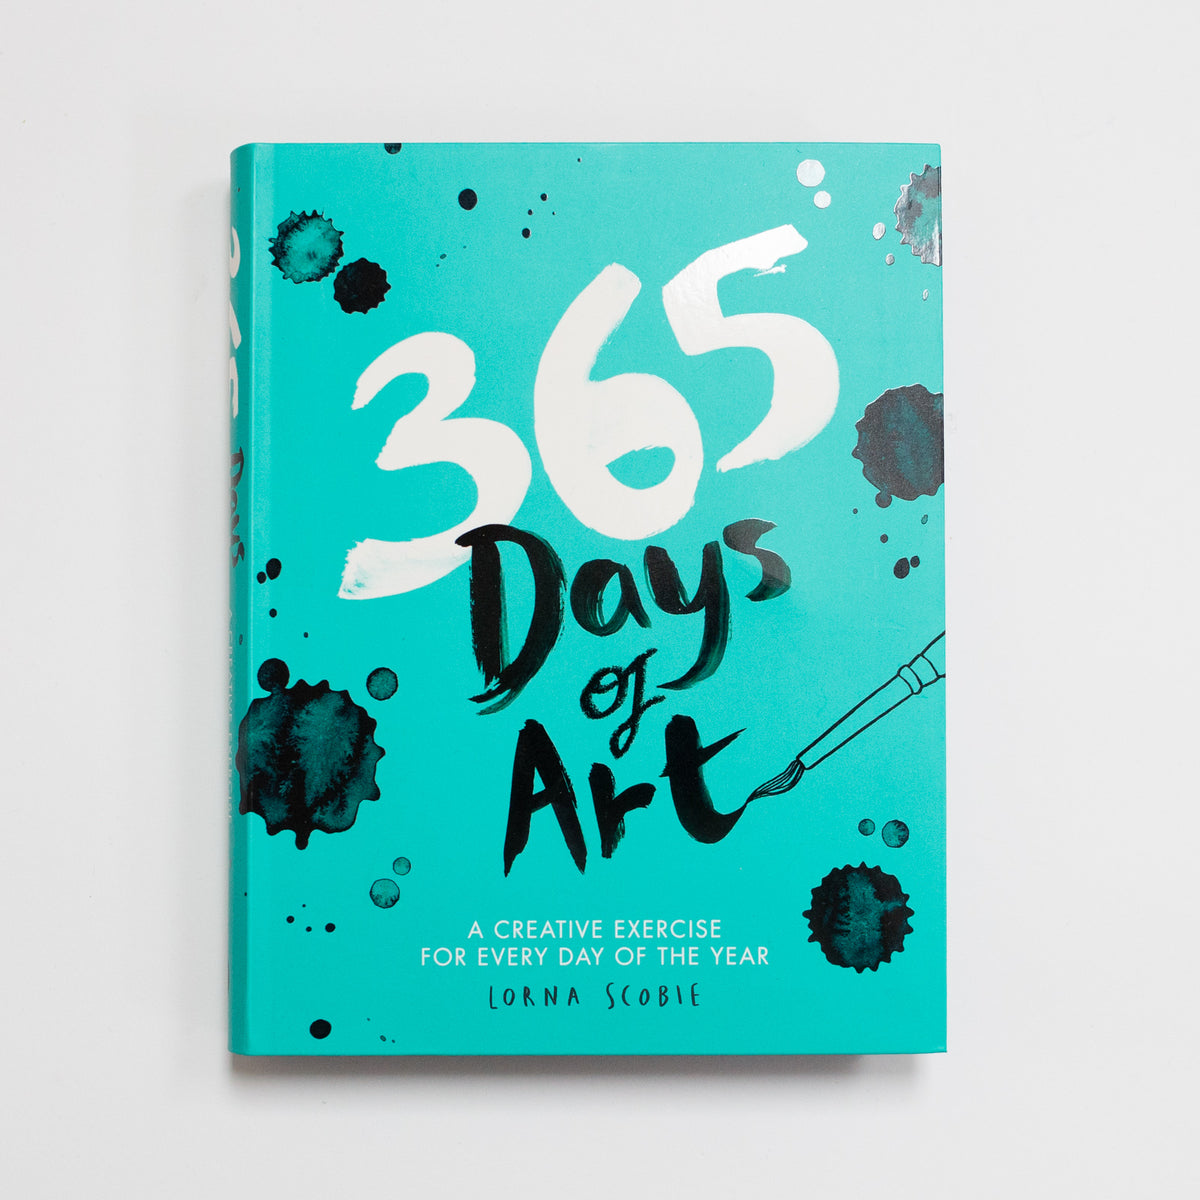 365 days of art by Lorna Scobie